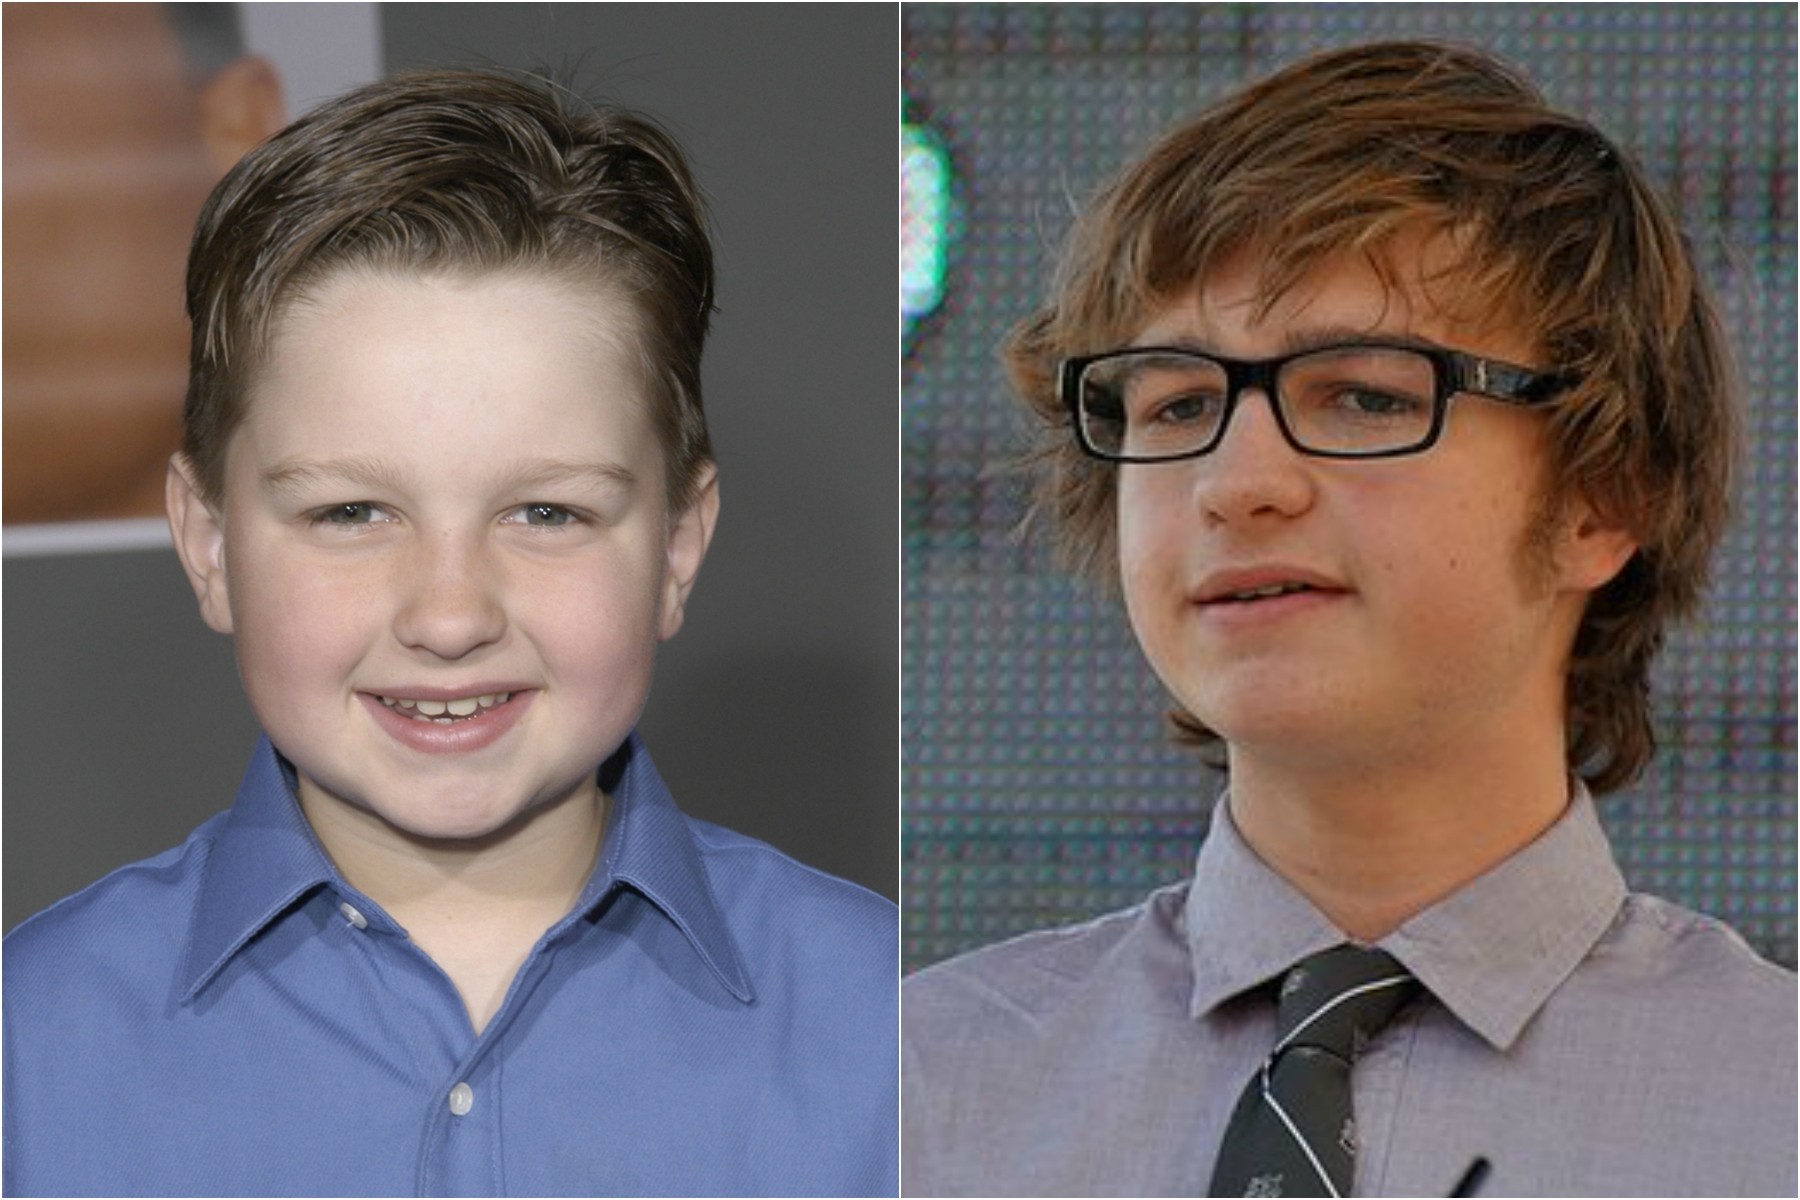 À esquerda, Angus T. Jones aos 9 anos, em 2003, primeiro ano da série 'Two and a Half Men'. À direita, o ator atualmente, com 20 anos de idade. (Foto: Getty Images)